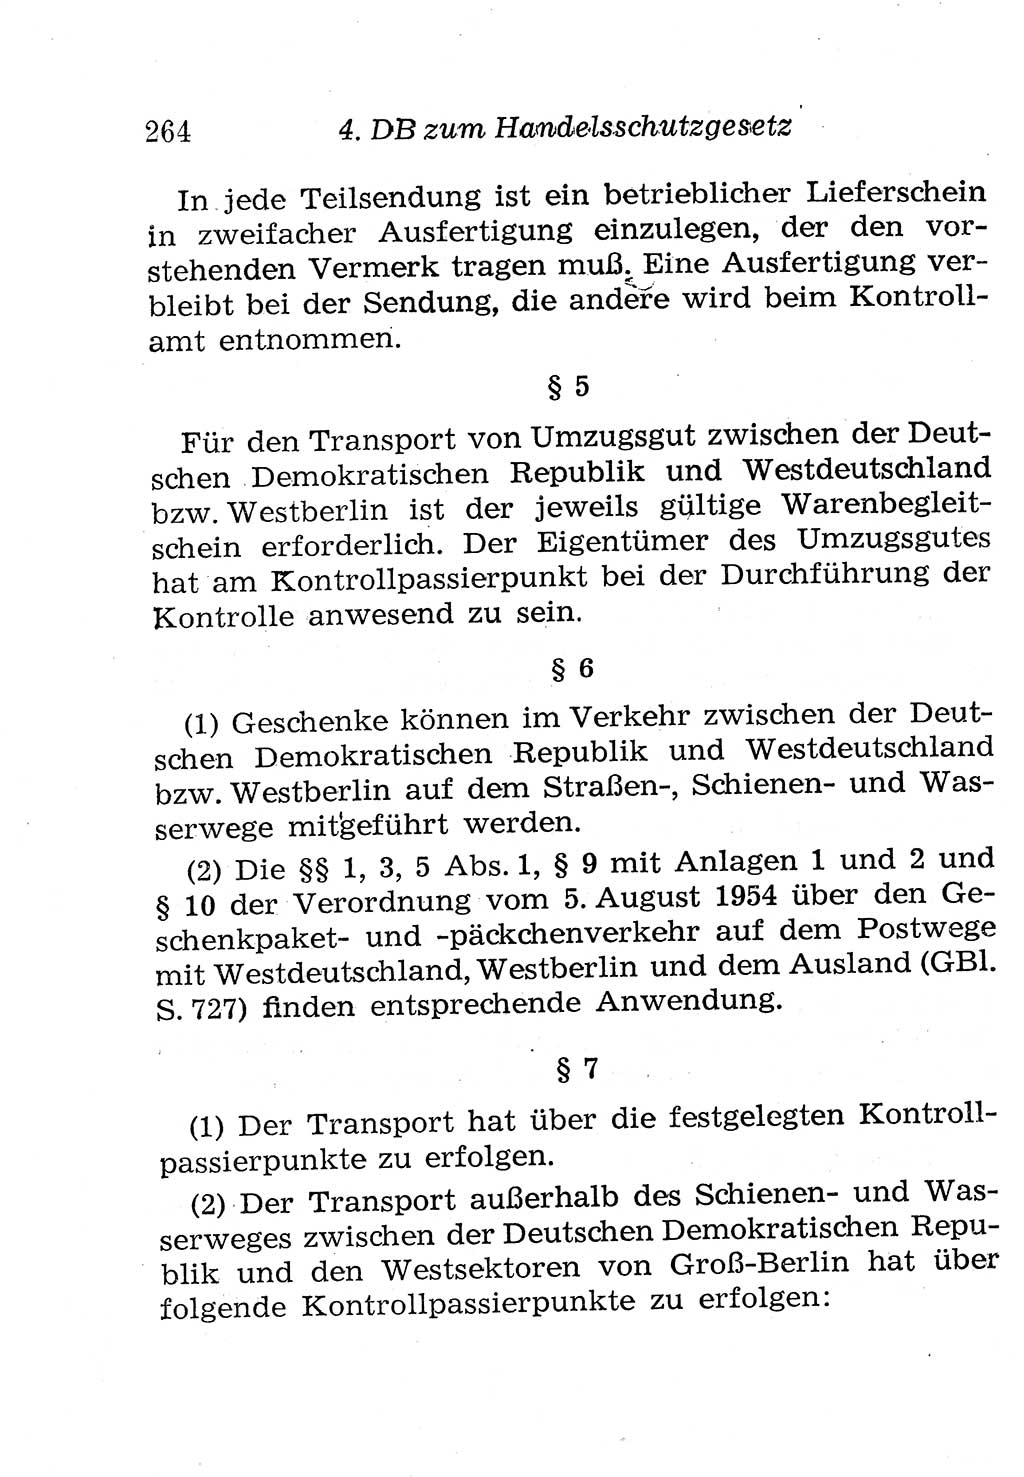 Strafgesetzbuch (StGB) und andere Strafgesetze [Deutsche Demokratische Republik (DDR)] 1958, Seite 264 (StGB Strafges. DDR 1958, S. 264)